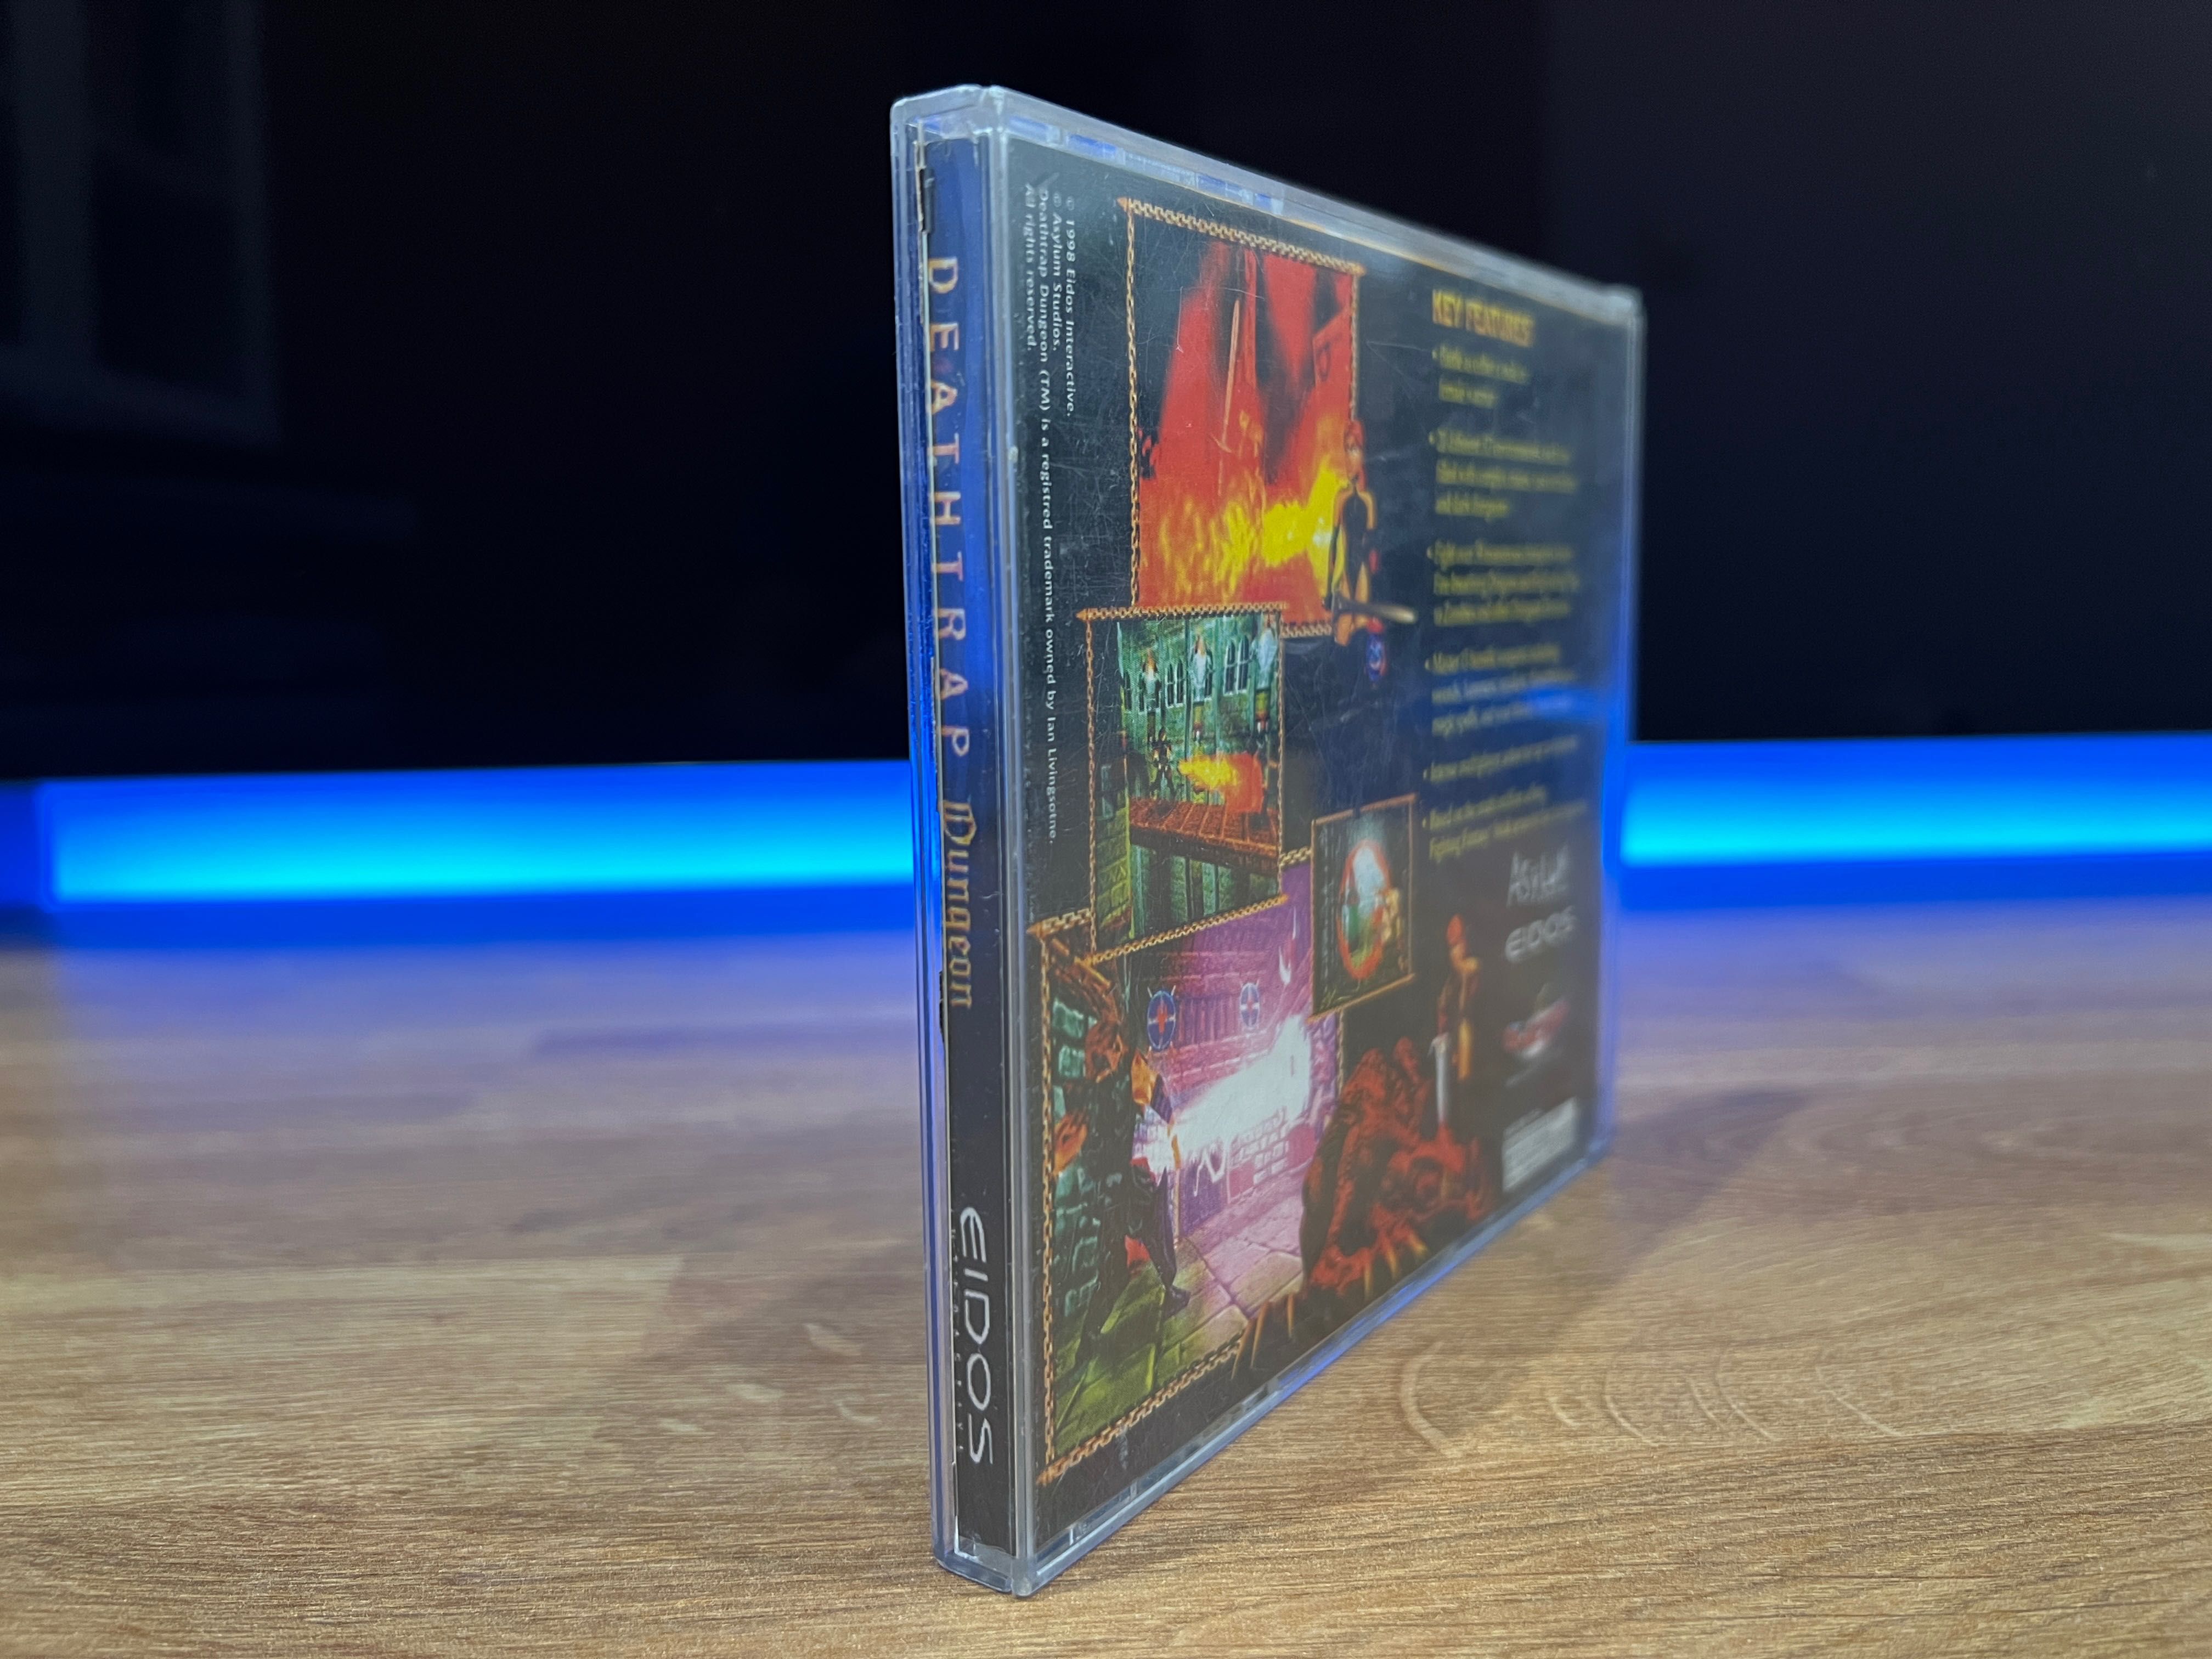 DEATHTRAP Dungeon wydanie z CD-Action 03/2002